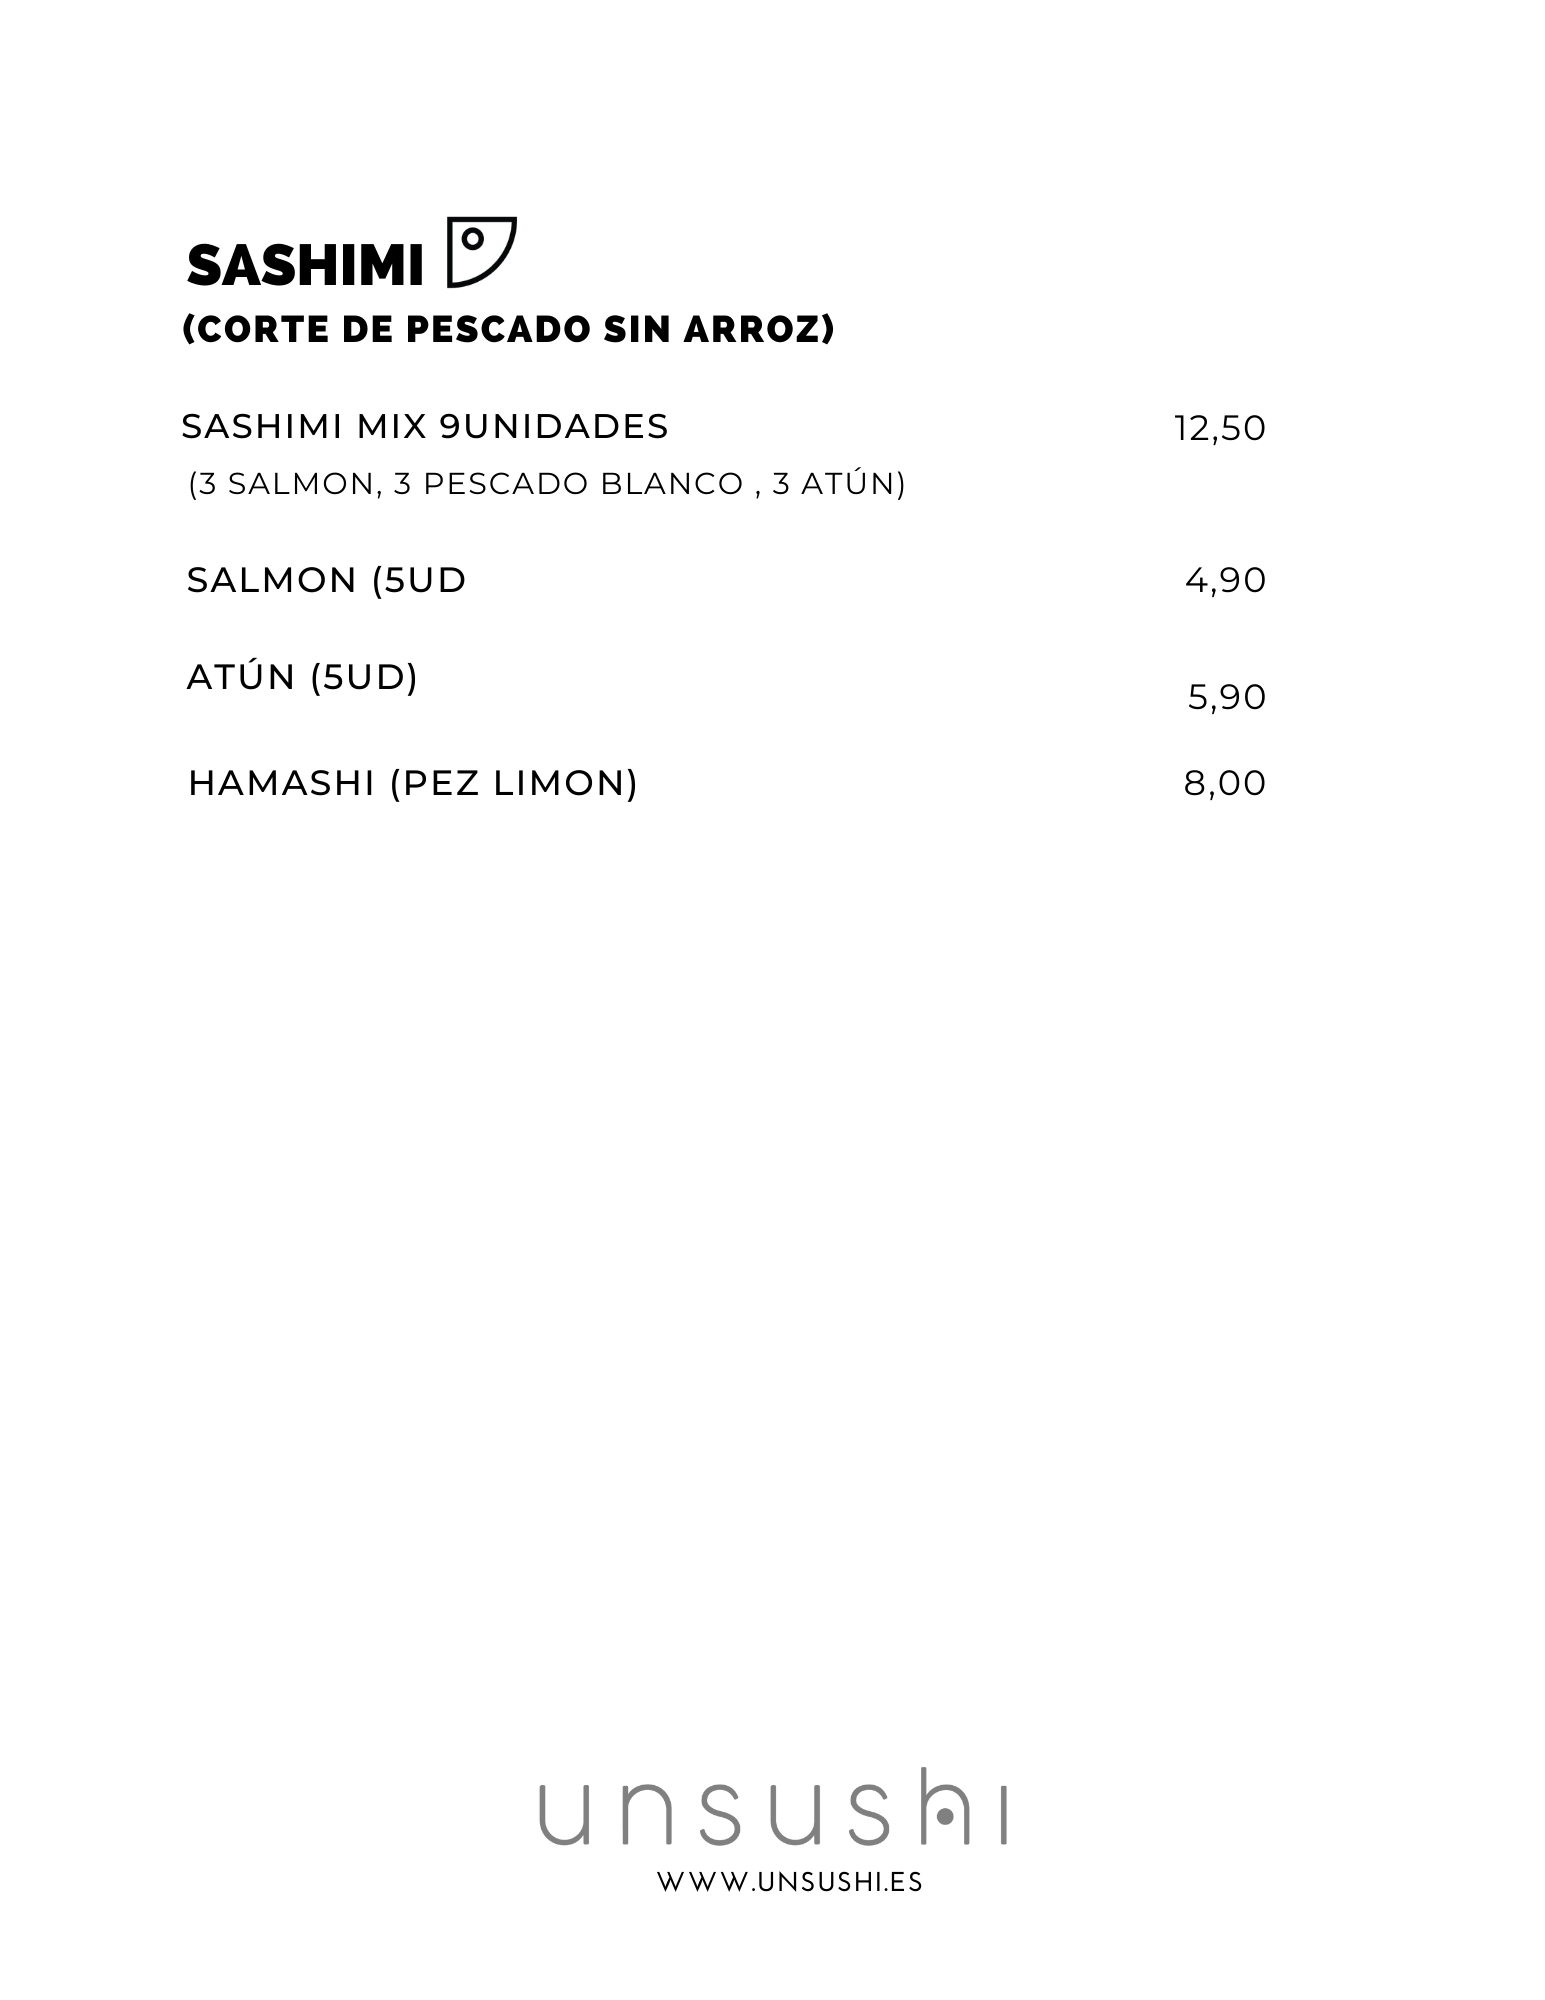 sashimi spanish